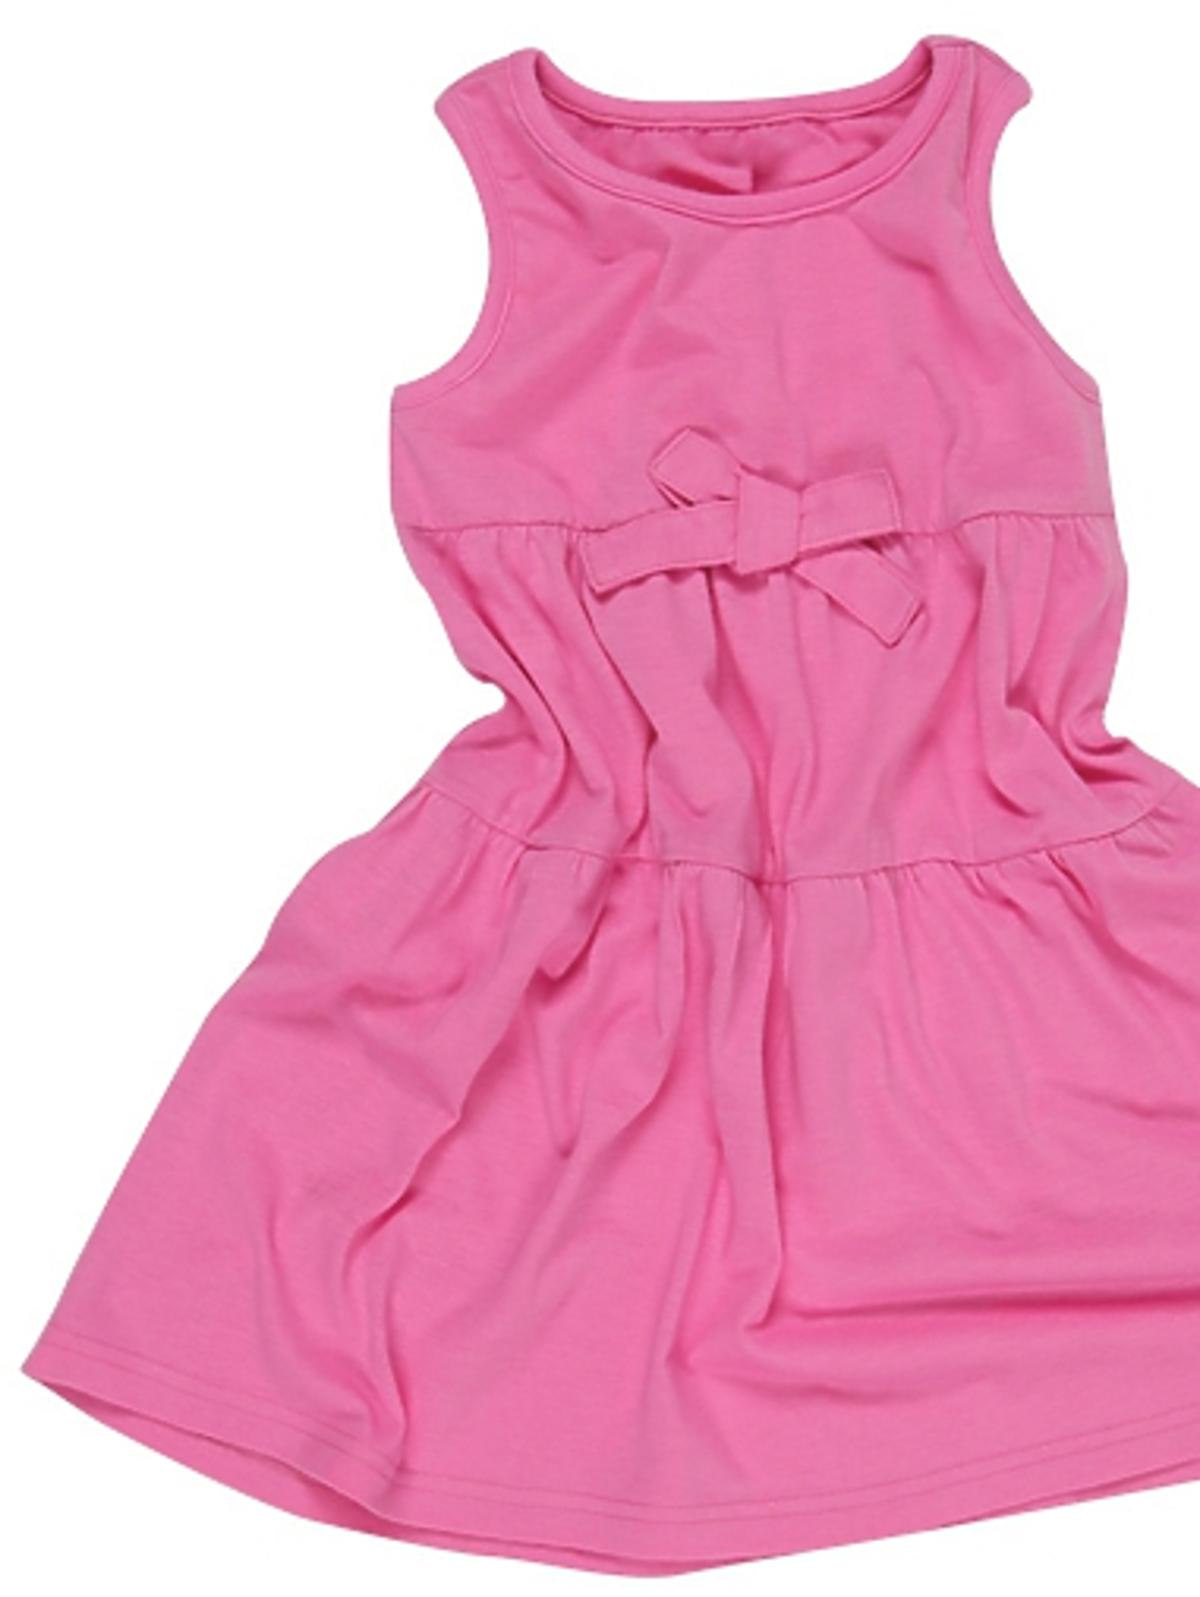 sukienka dla dziewczynki, Pepco, ubranka dla dzieci